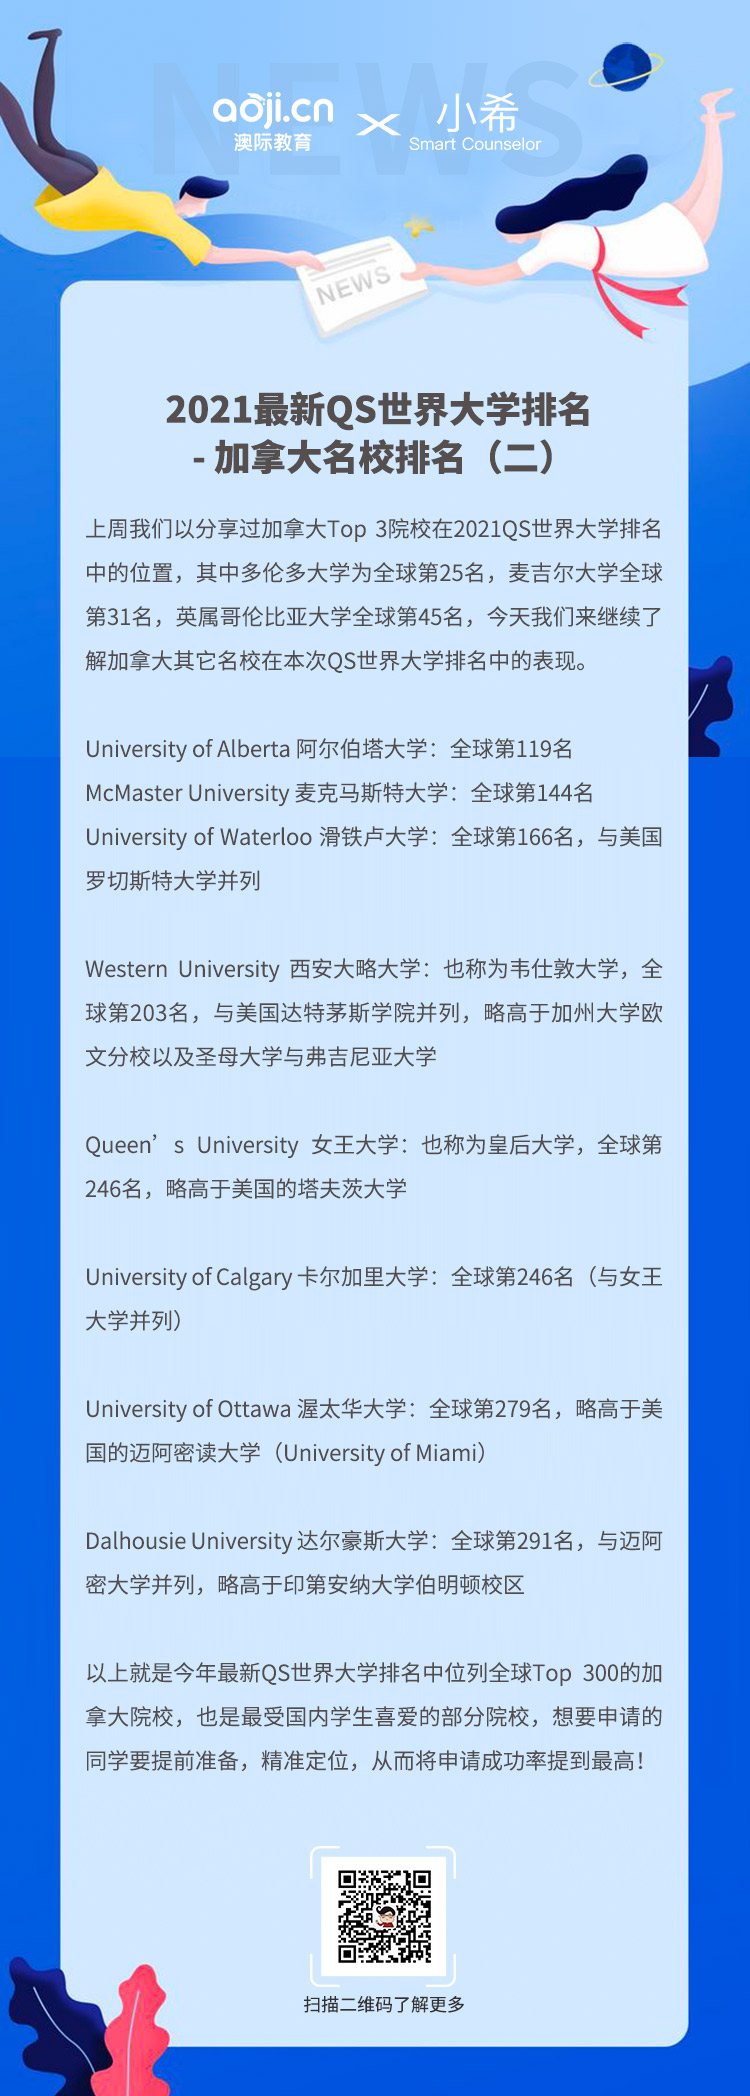 2021最新QS世界大學排名 - 加拿大名校排名